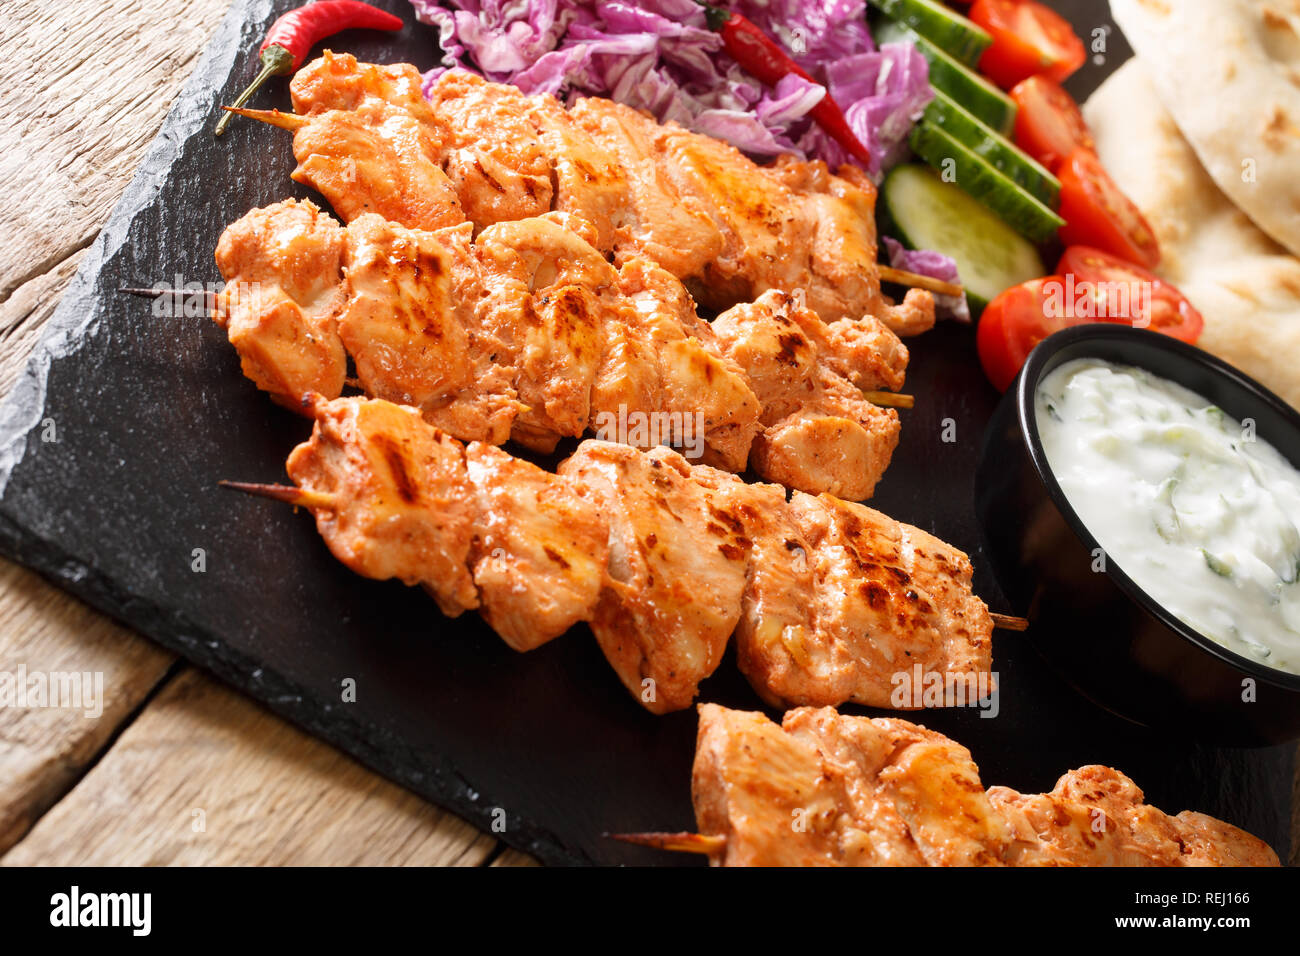 Shish Taouk libanais (Tawook)avec des légumes frais, sauce yogourt et pita close-up sur la table horizontale. Banque D'Images